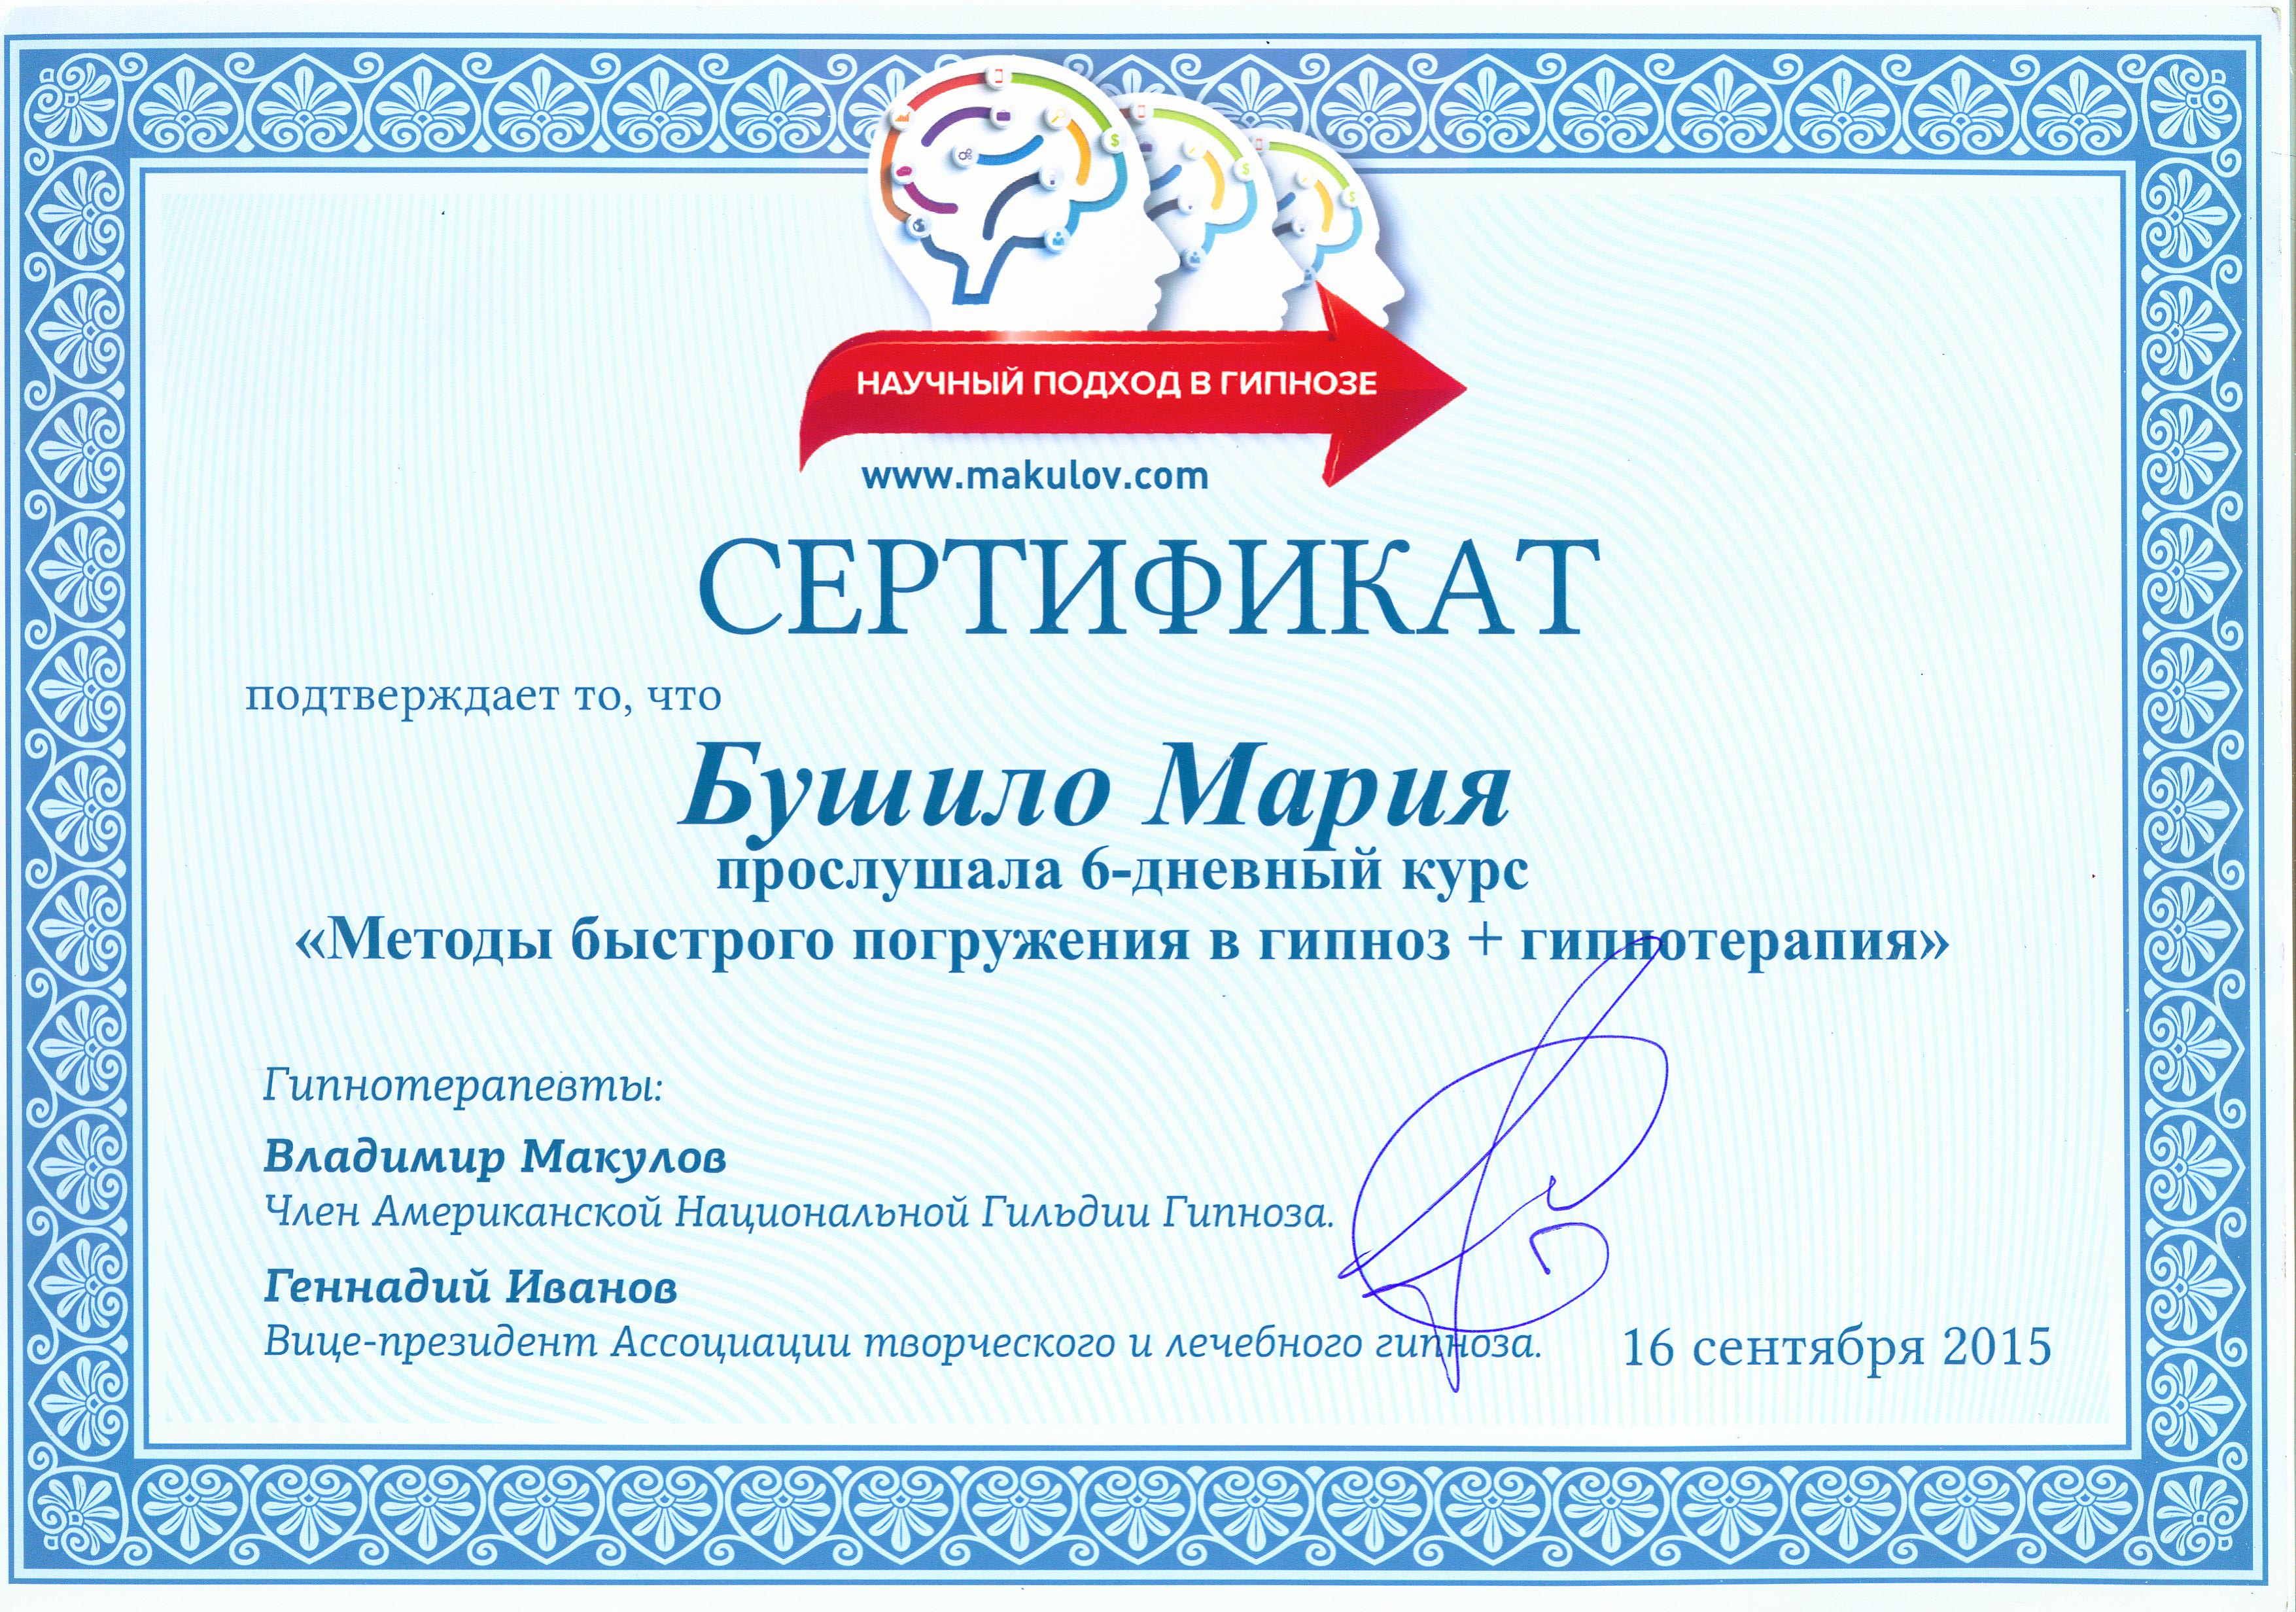 сертификат гипноз и гиппотерапия